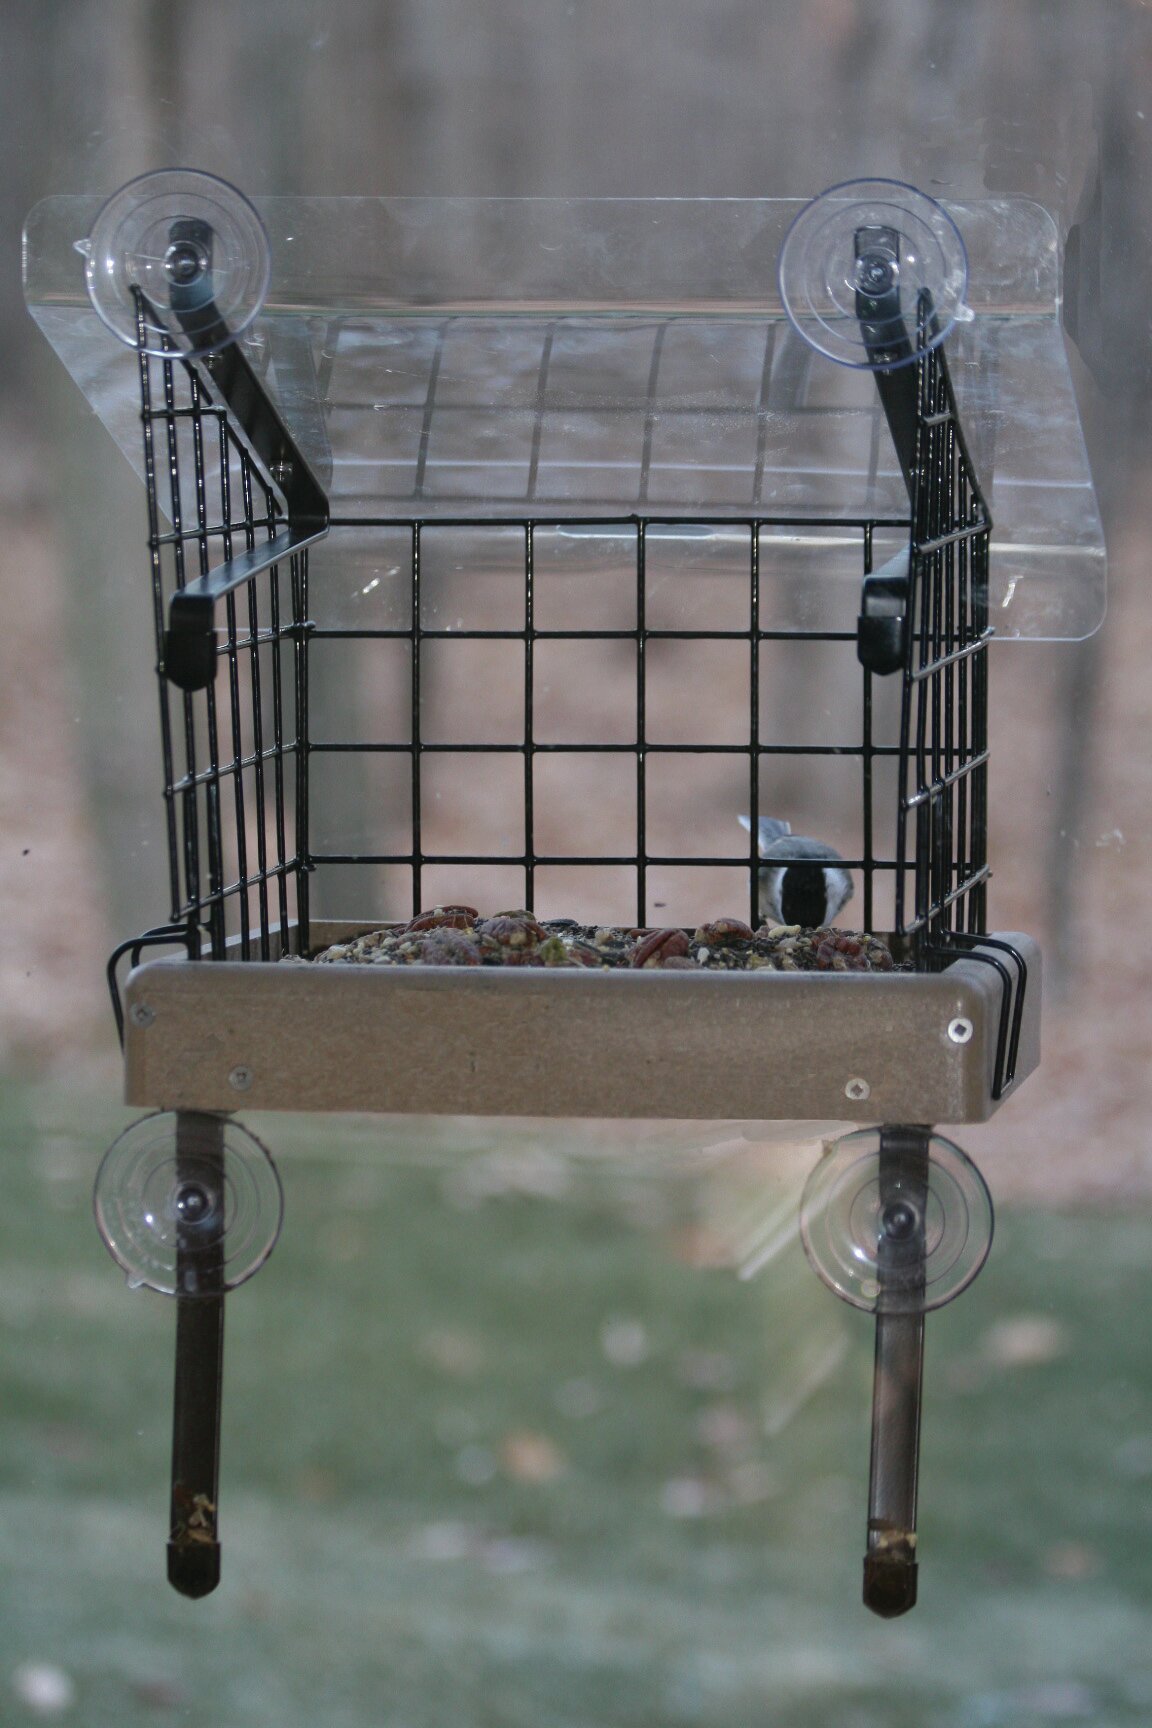 best suet feeder for birds